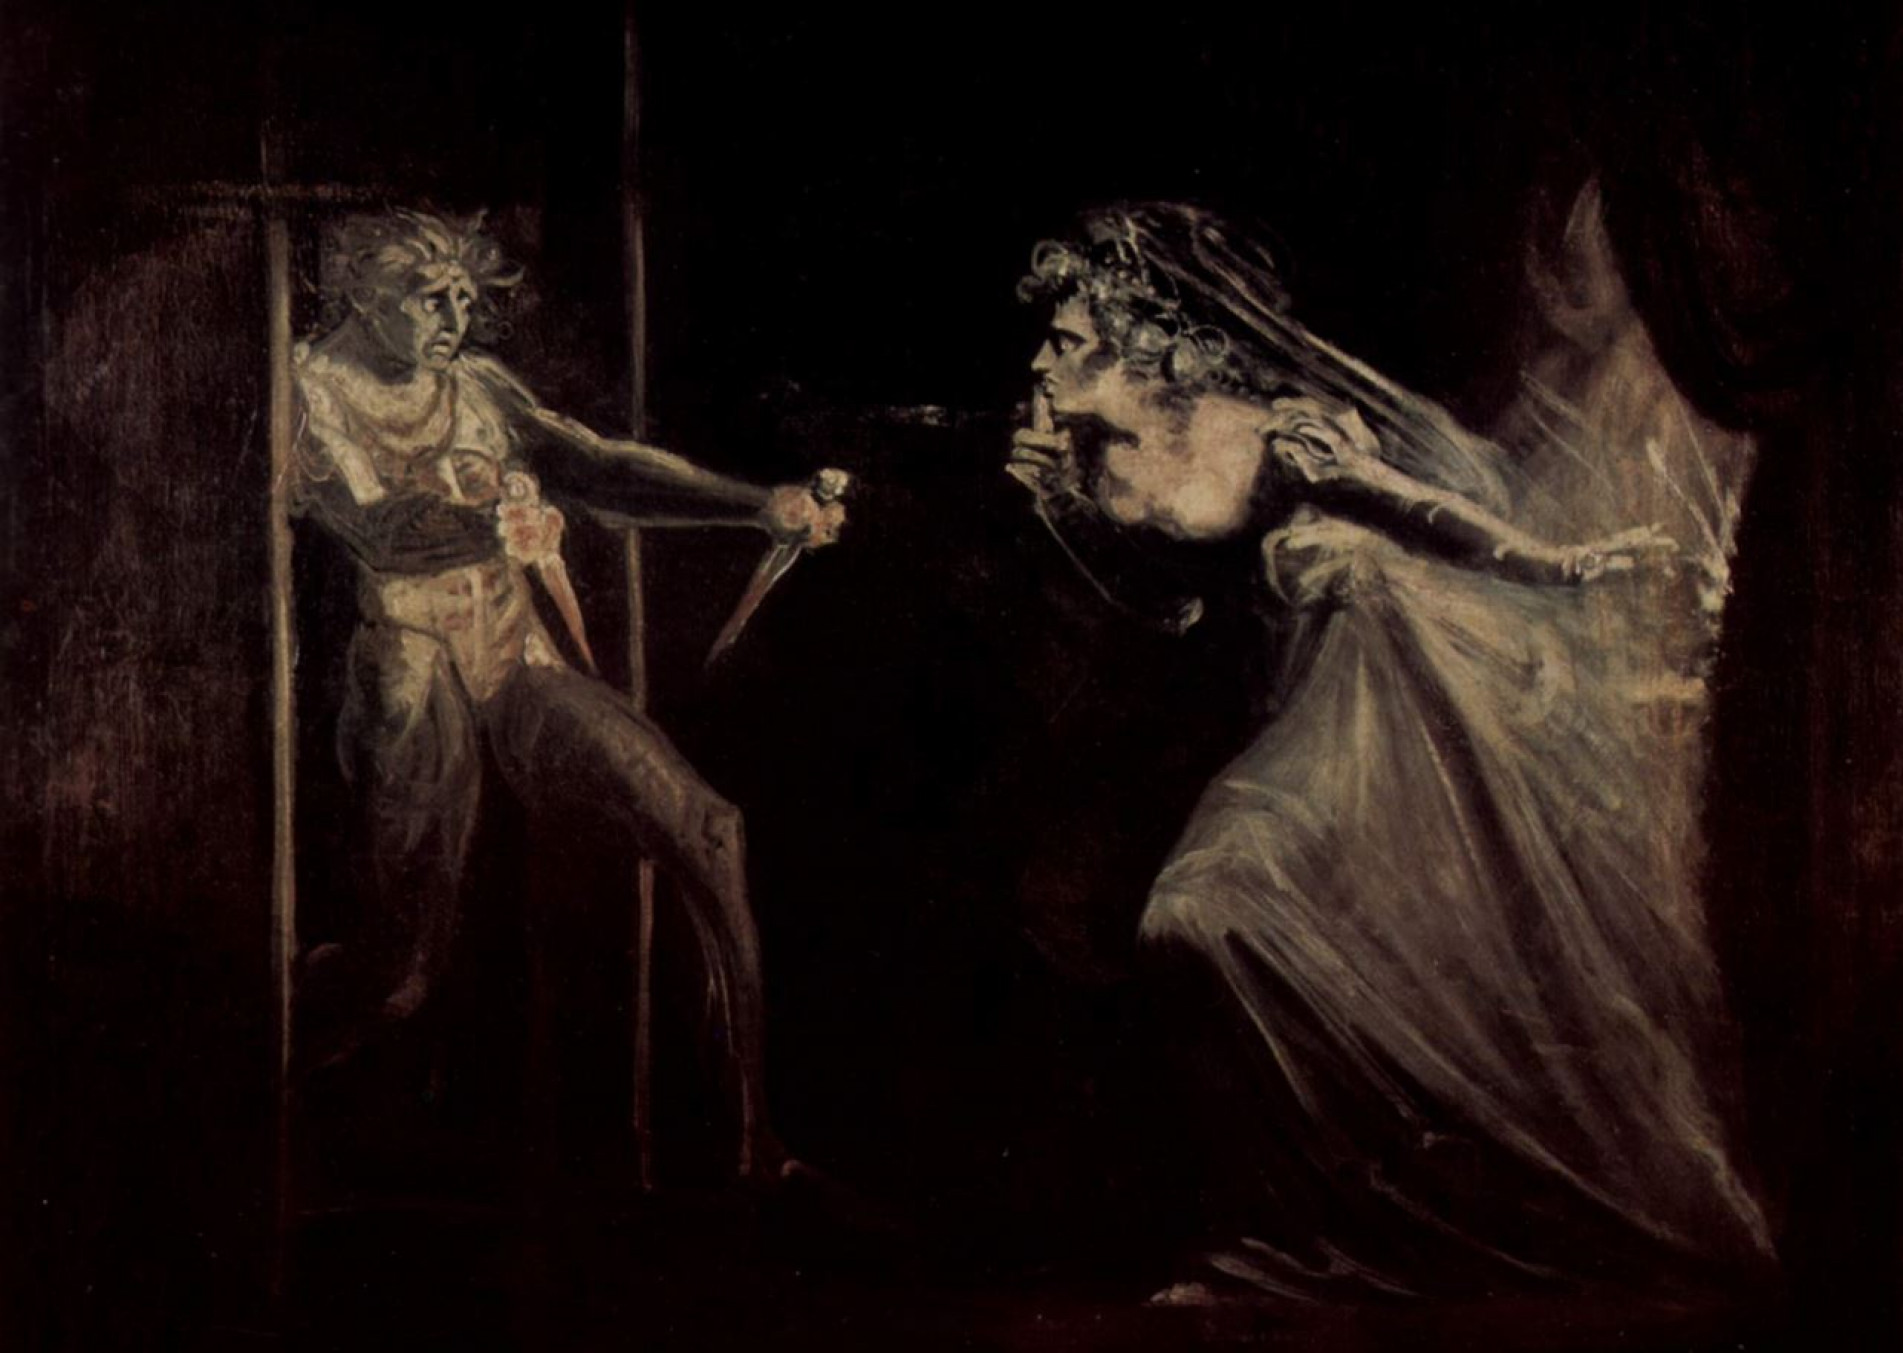 Johann Heinrich Füssli (Suíça 1741-1825) pintou o aterrorizado Macbeth após matar o rei Duncan, estimulado pela ambiciosa esposa.